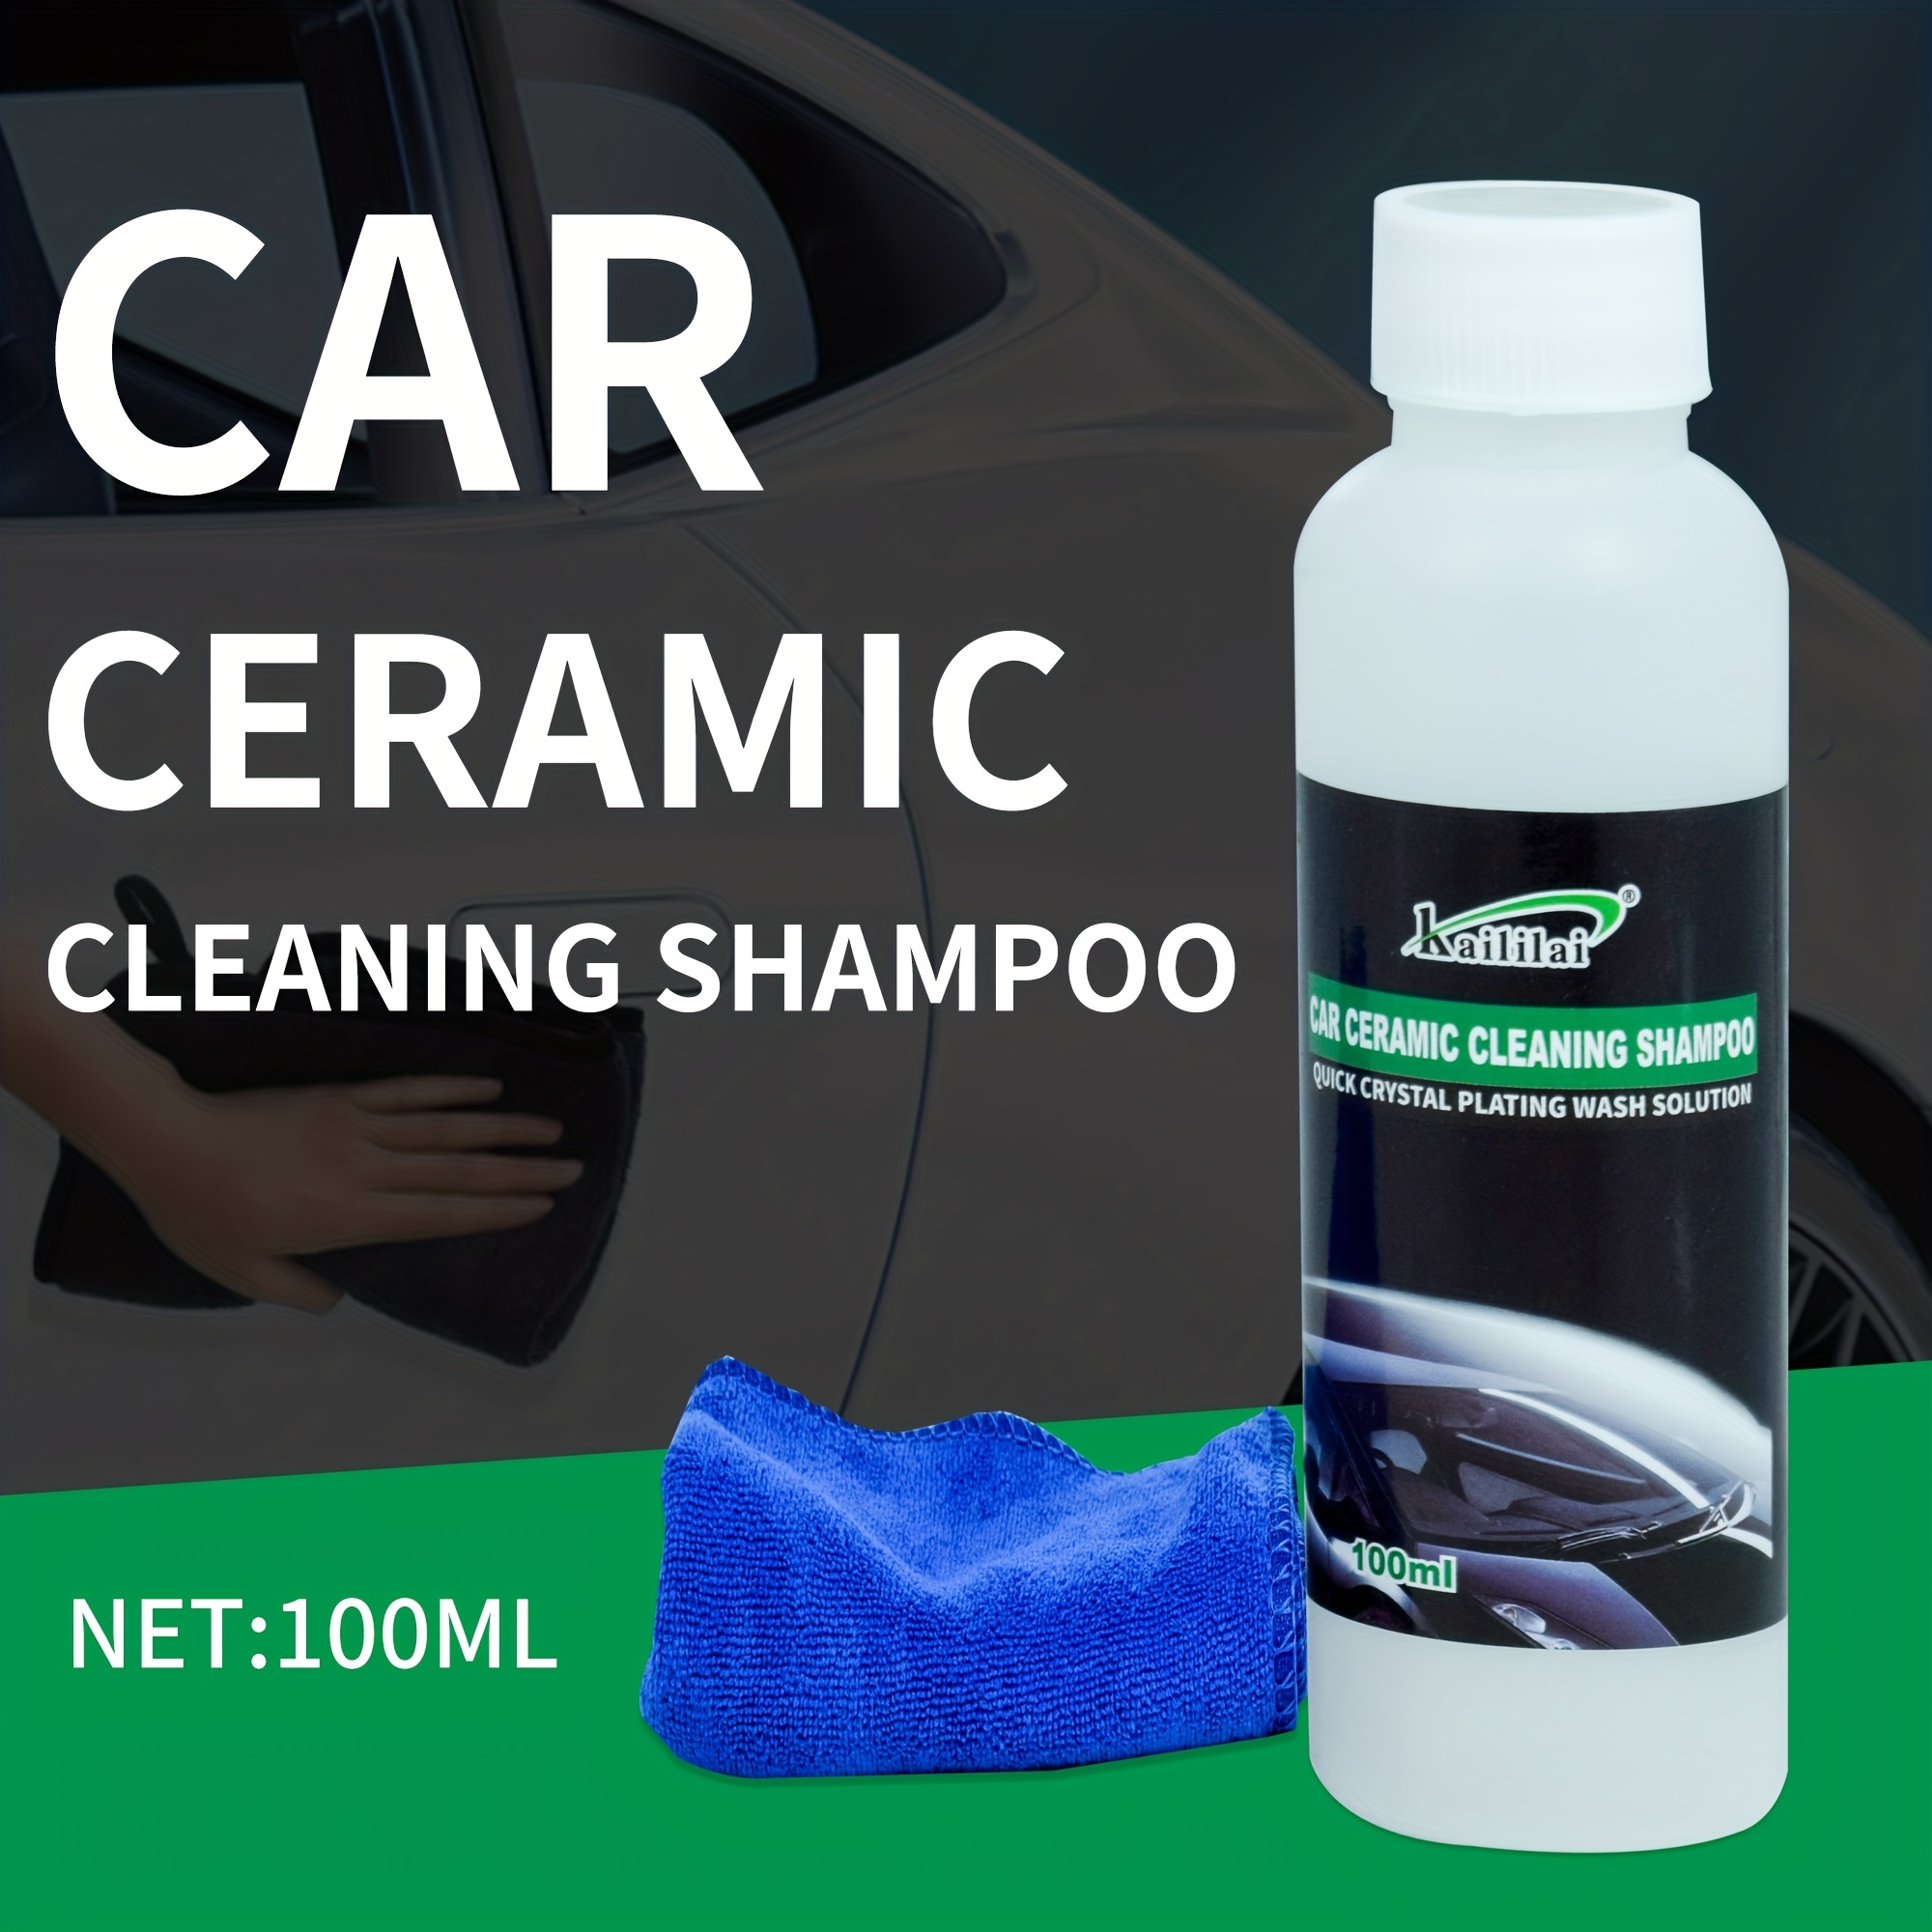 Champú para lavado de autos, 100ml, de espuma de alta concentración 1:100,  excelente para el aseo del vehiculo